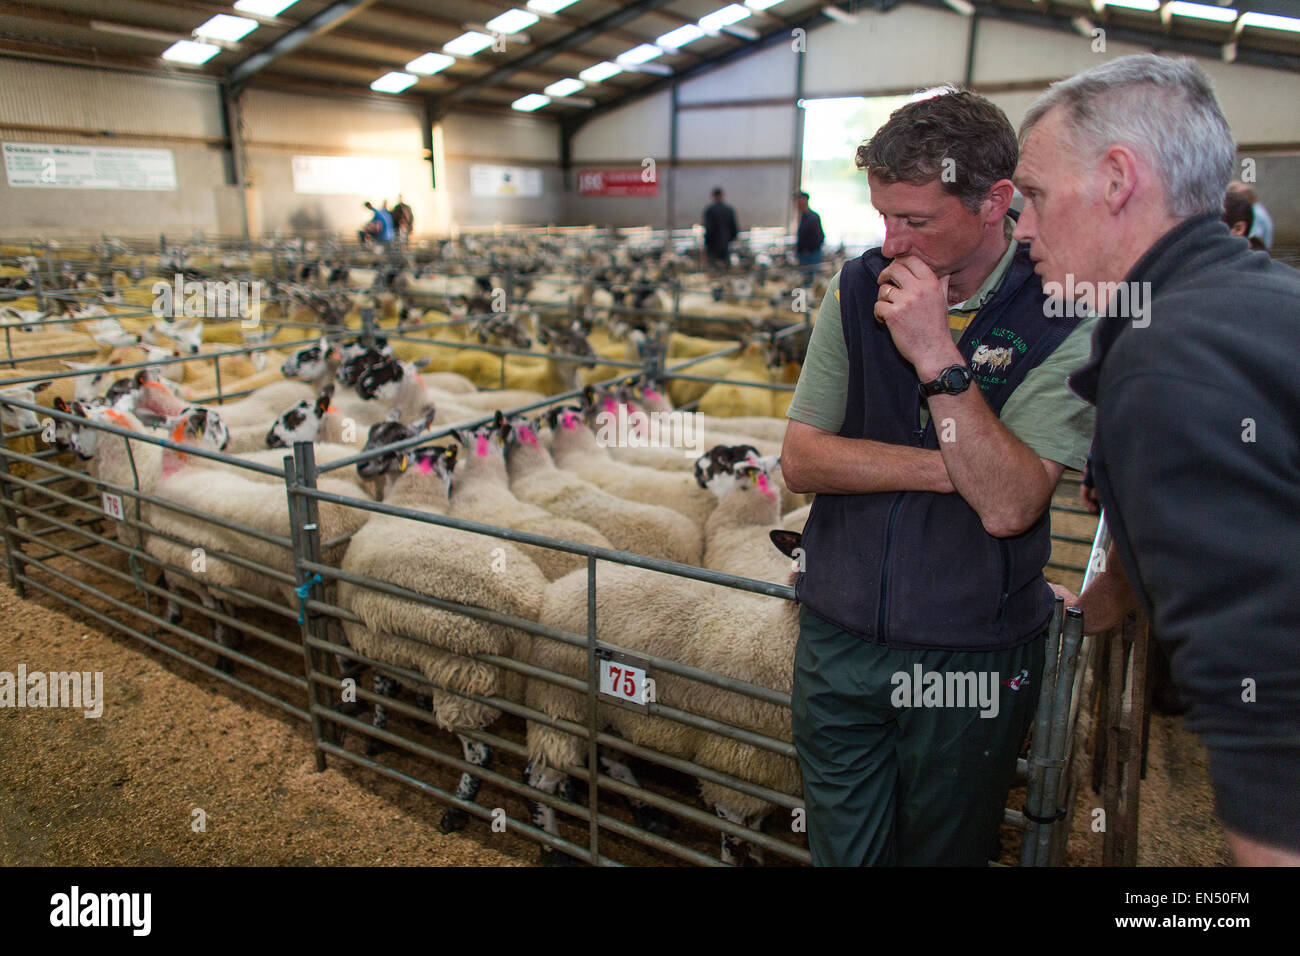 Tägliche Schaf-Auktion in Armoy, Nordirland Stockfoto